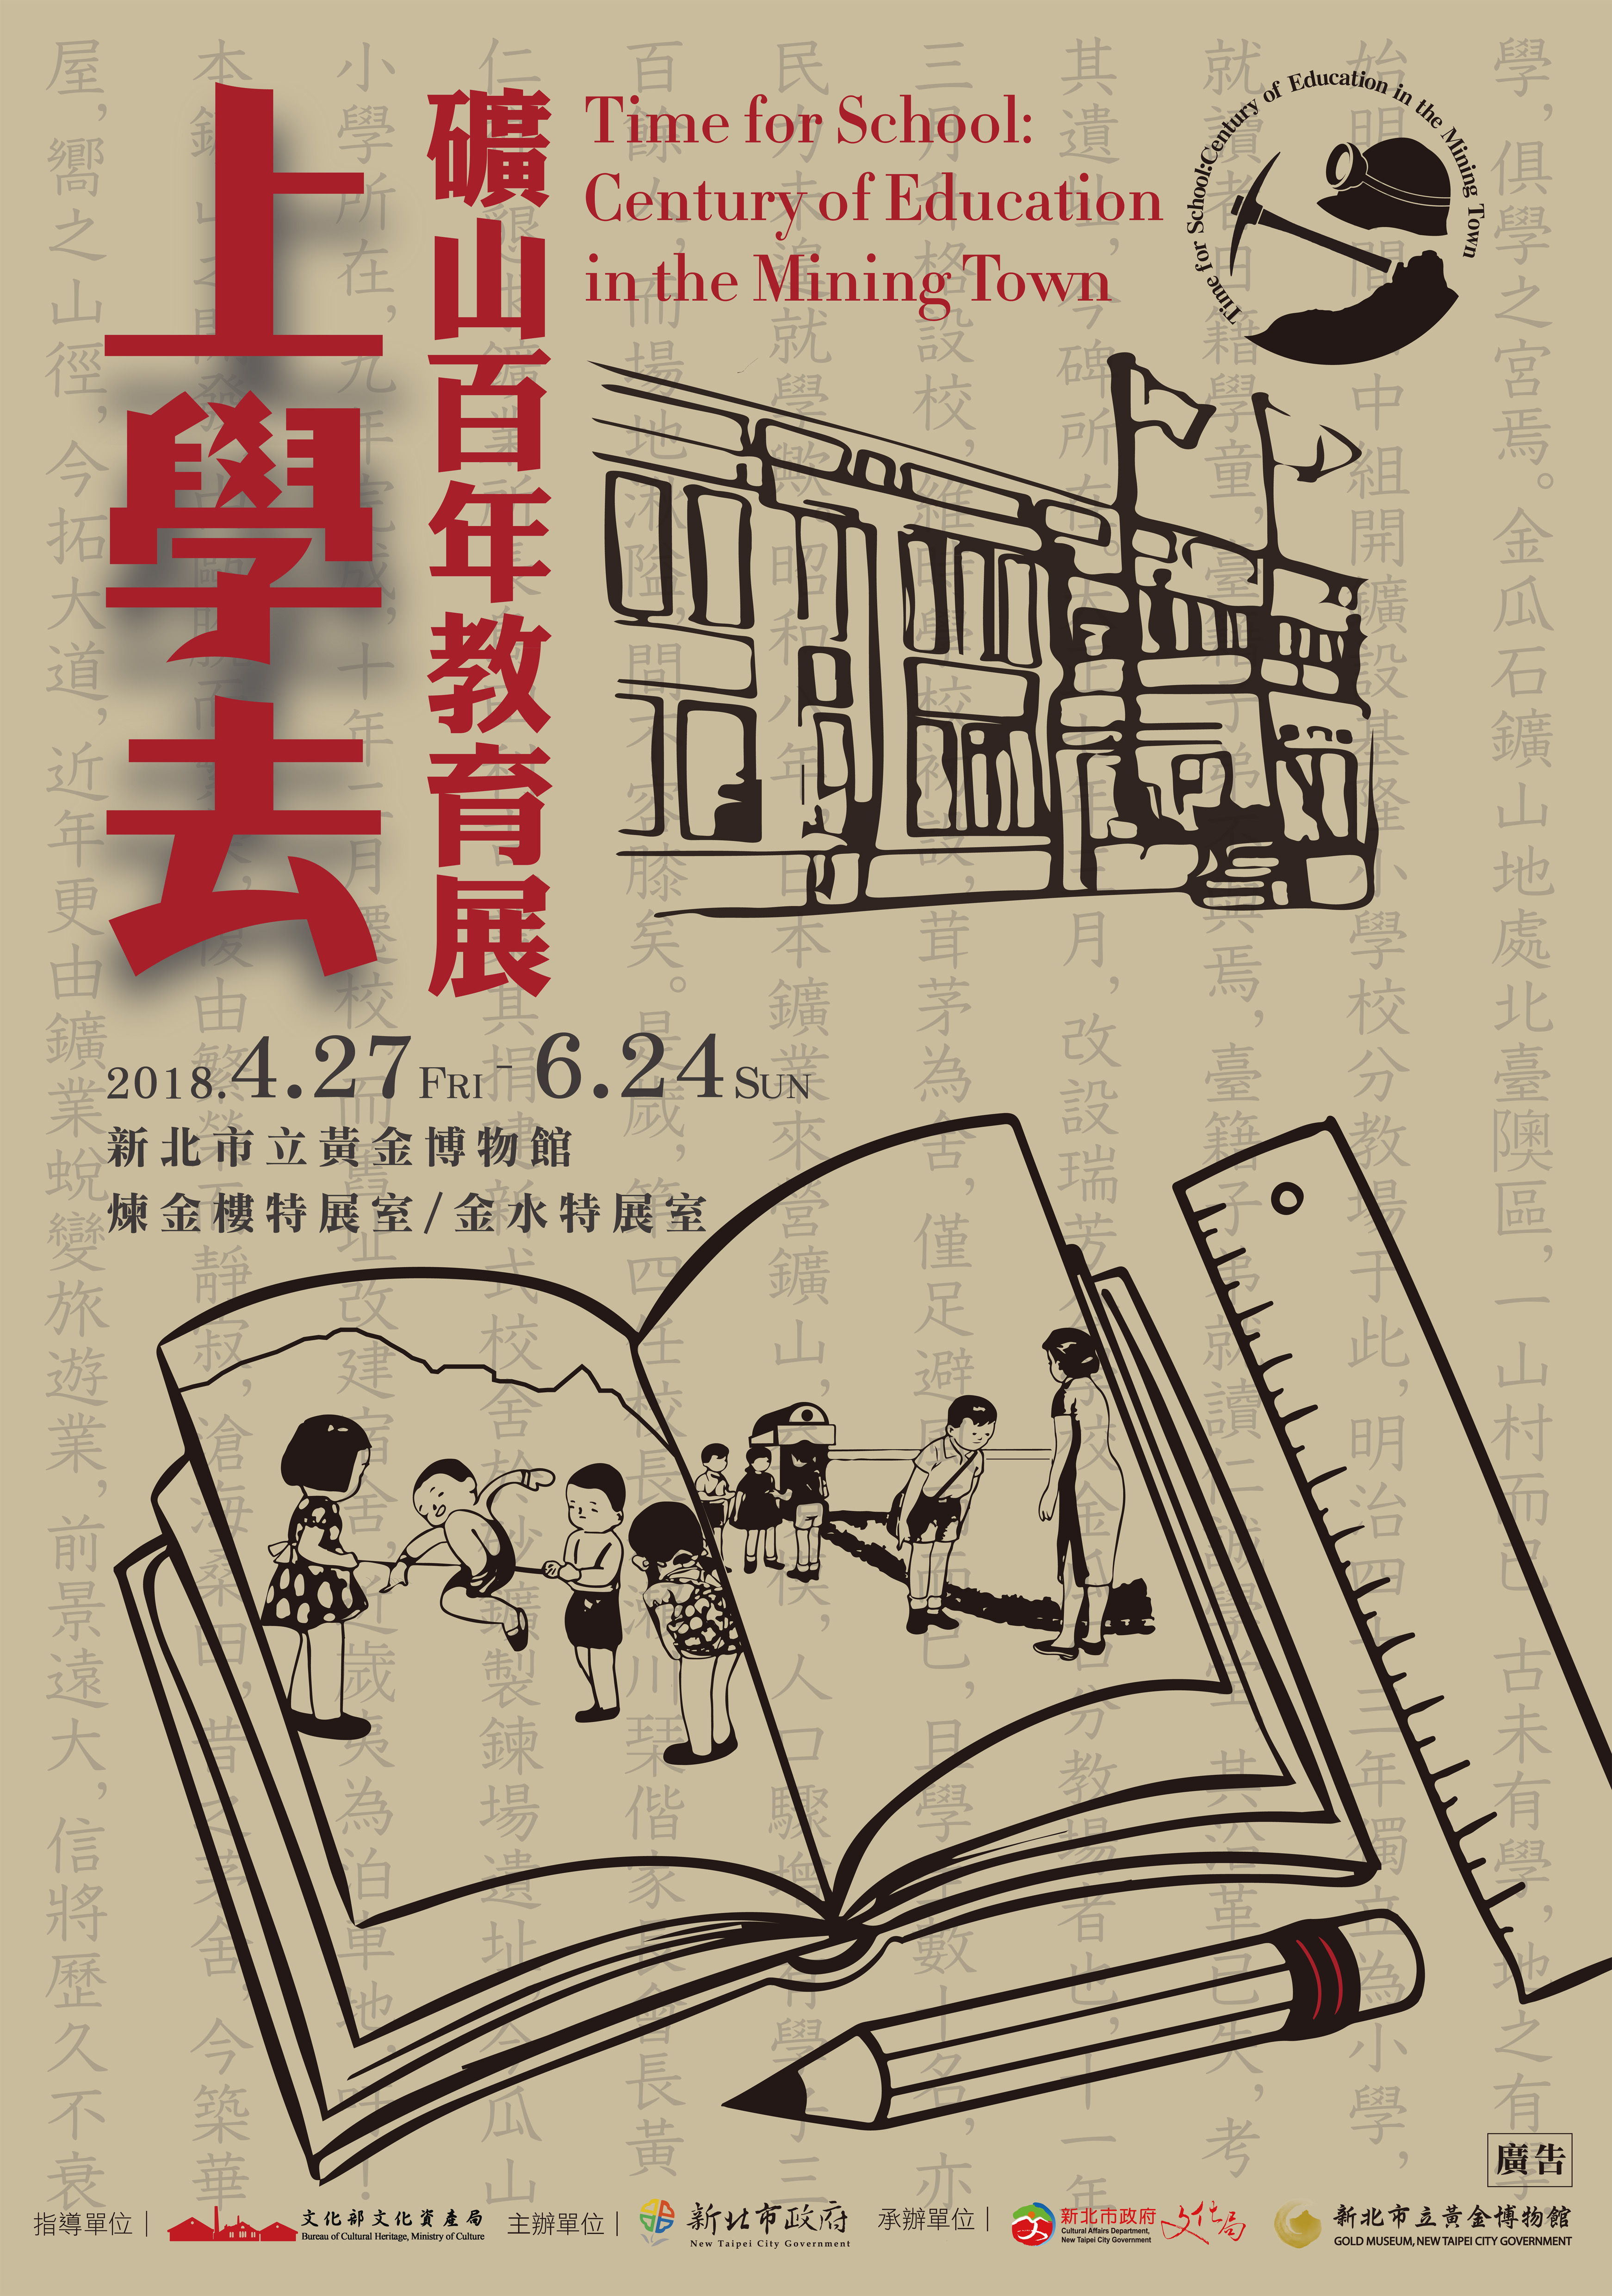 신 베이시 금 박물관 [학교에서 학교-광산 100 주년 교육 전시회] 전시회 포스터